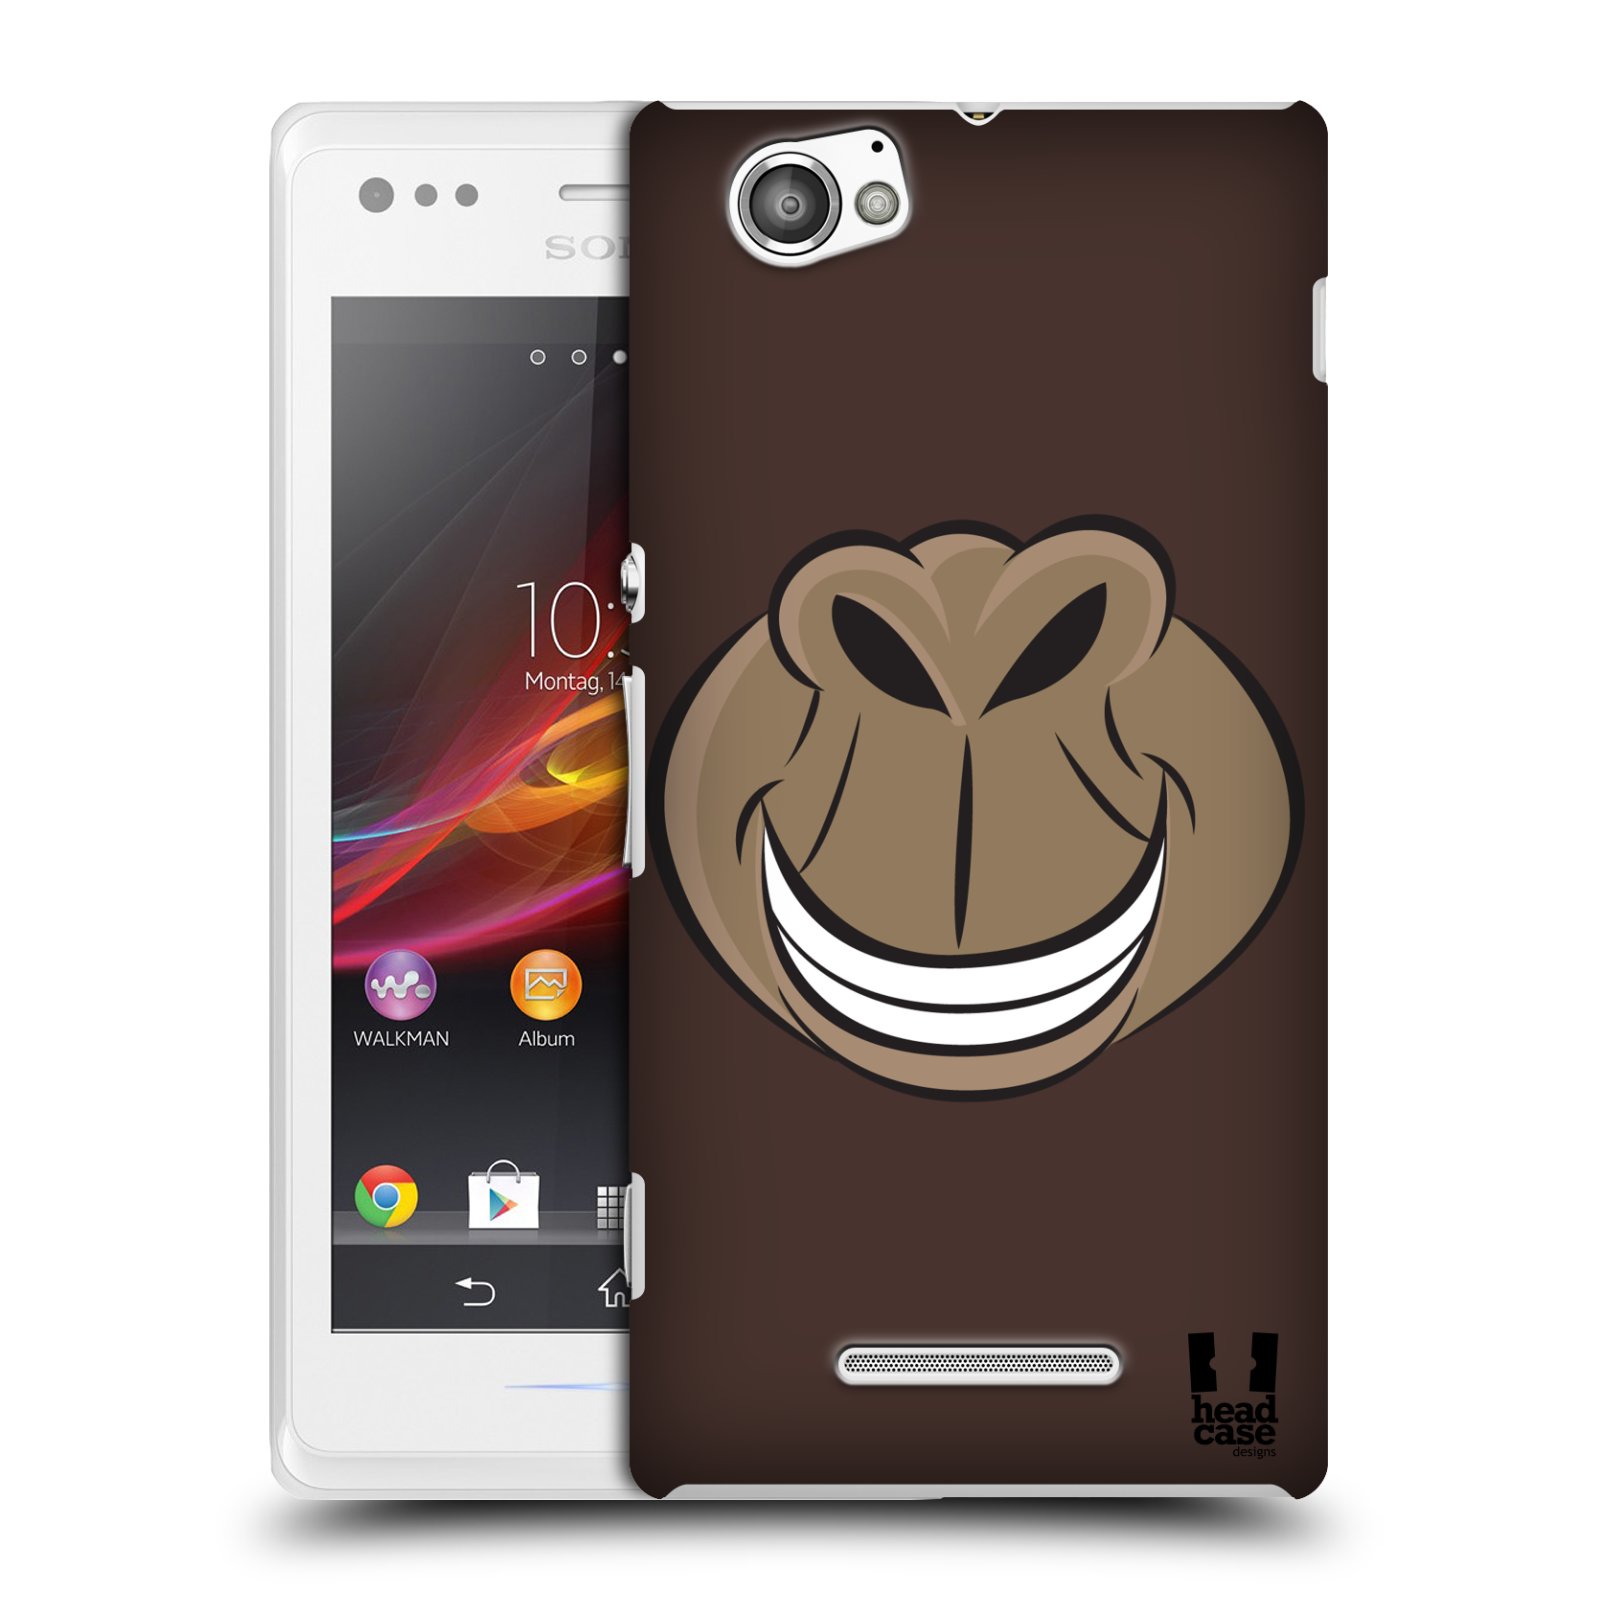 HEAD CASE plastový obal na mobil Sony Xperia M vzor Zvířecí úsměv opice hnědá